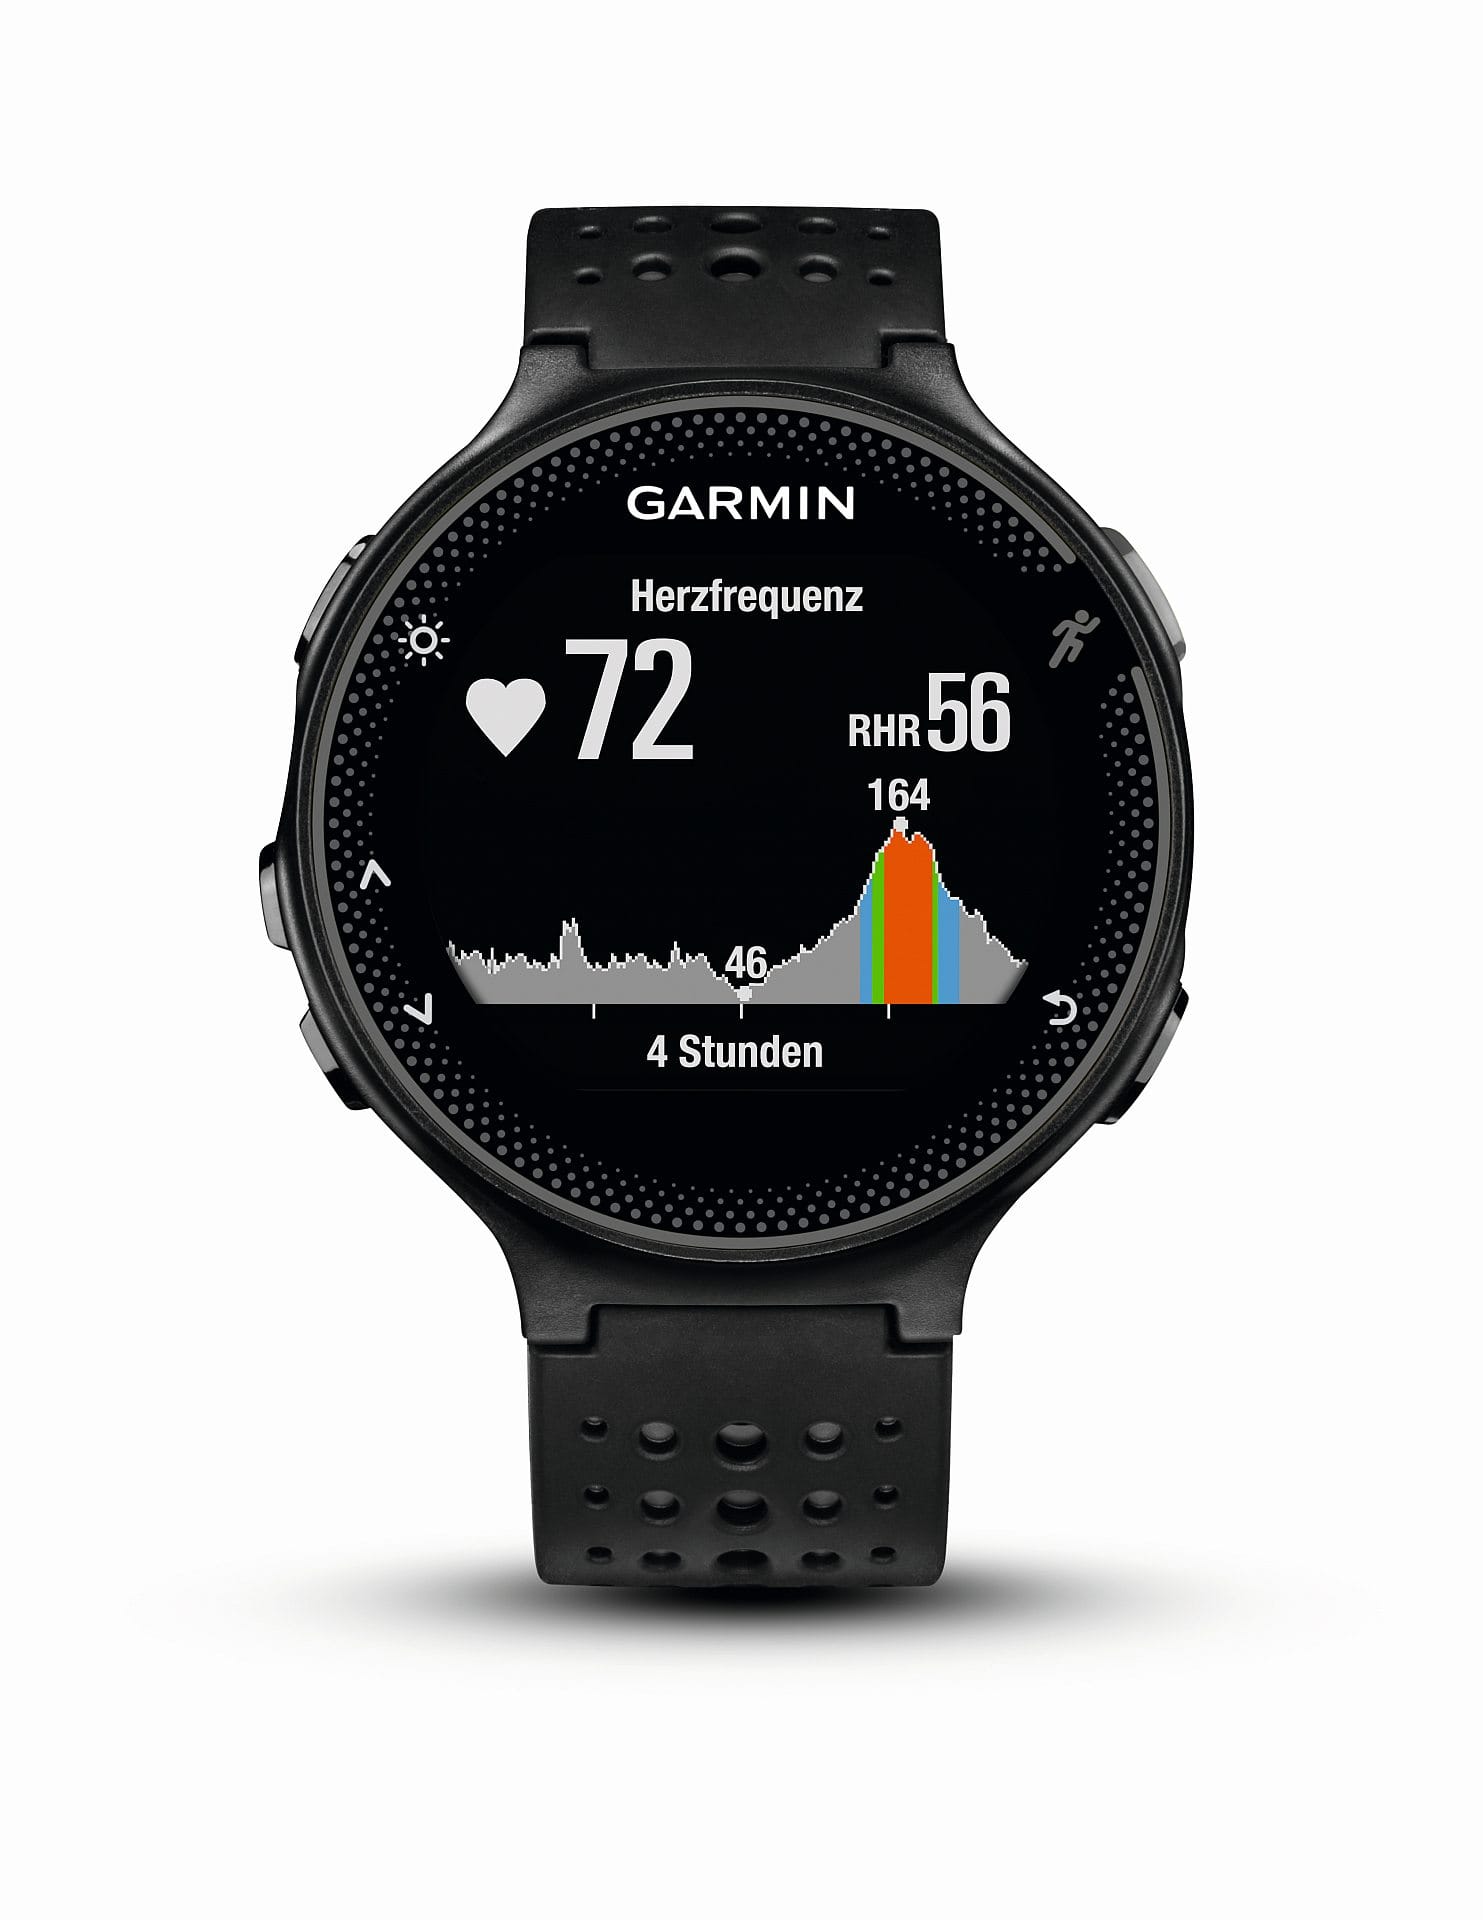 Die richtige Uhr für echte Sportler: Der Garmin Forerunner 235 HR für etwa 300 Euro mit GPS, integriertem optischen Pulssensor und Farbdisplay kann auch die passende Musik zum Sport auf dem Smartphone steuern.